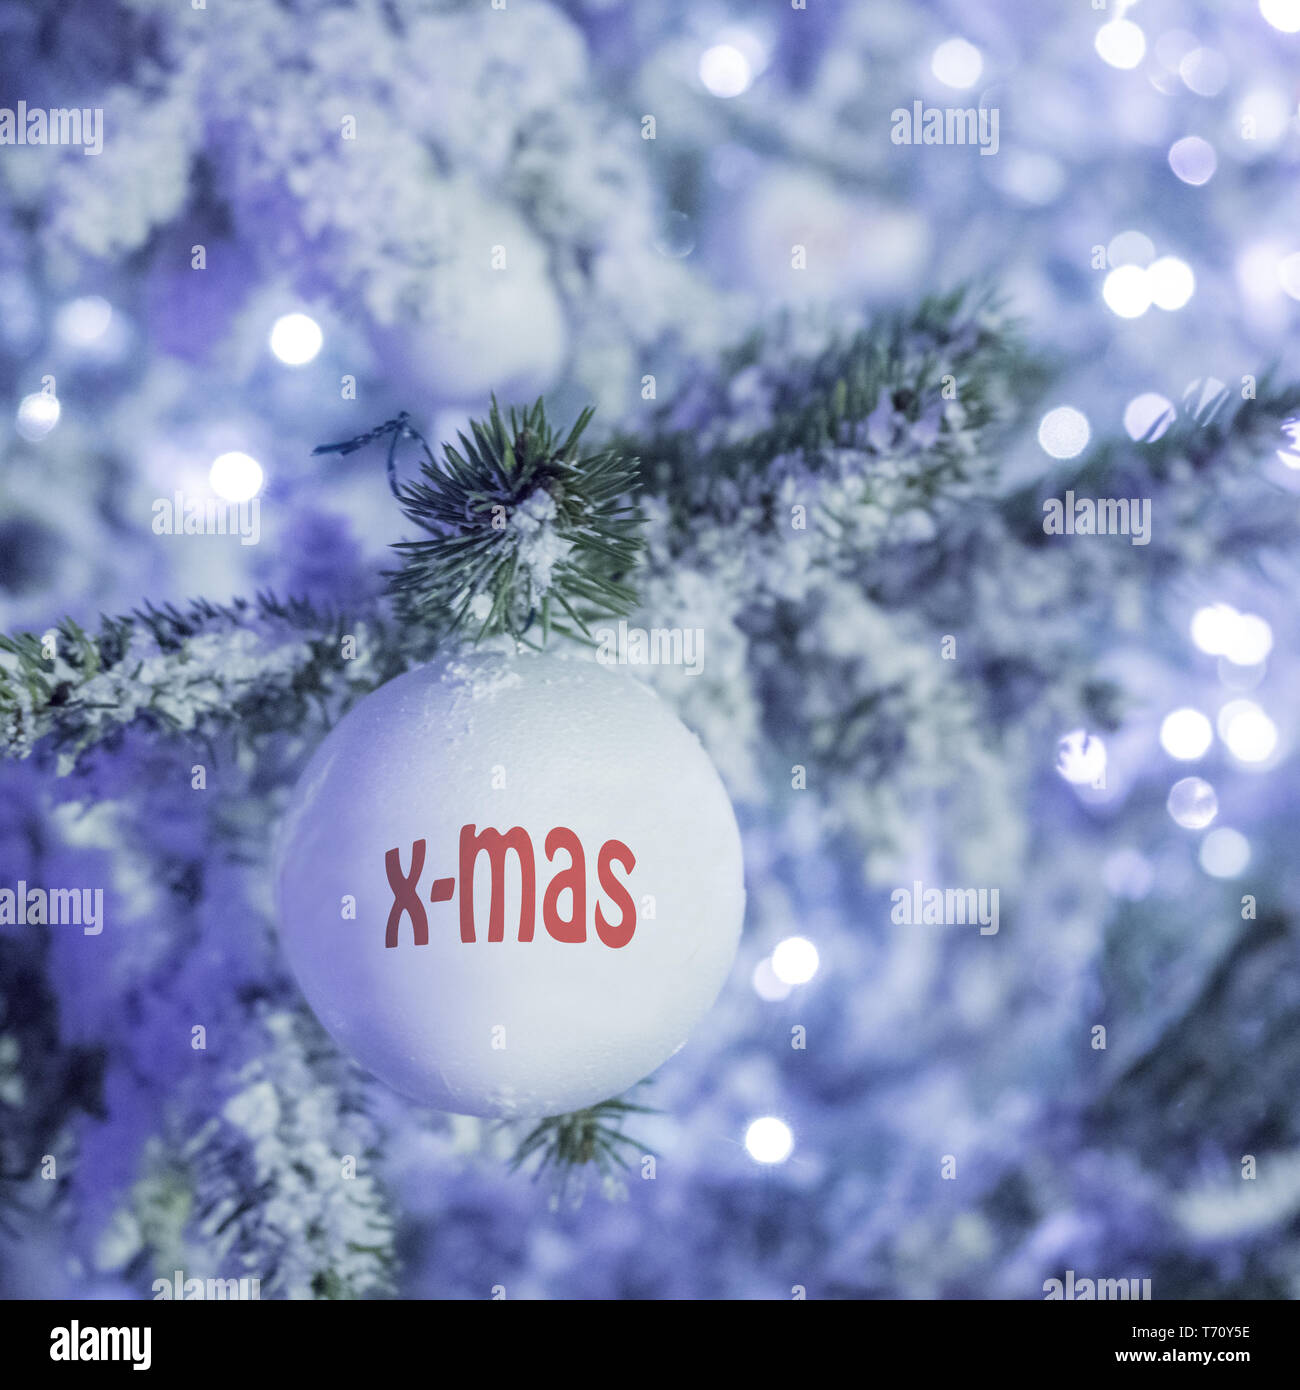 X-mas lampadina di Natale su una struttura ad albero Foto Stock